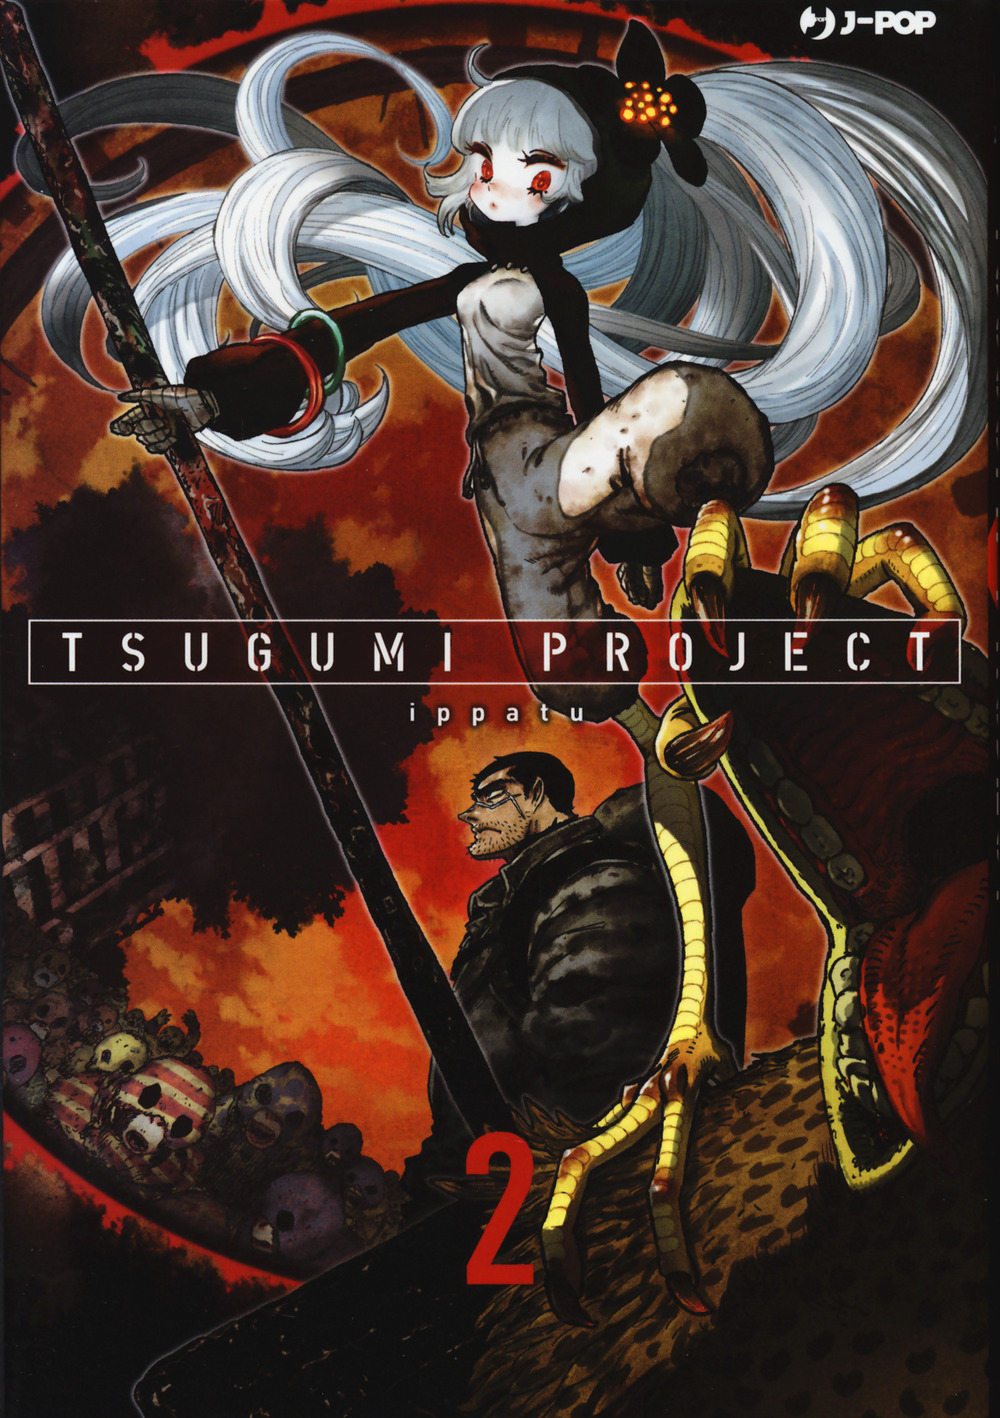 Tsugumi project. Vol. 2